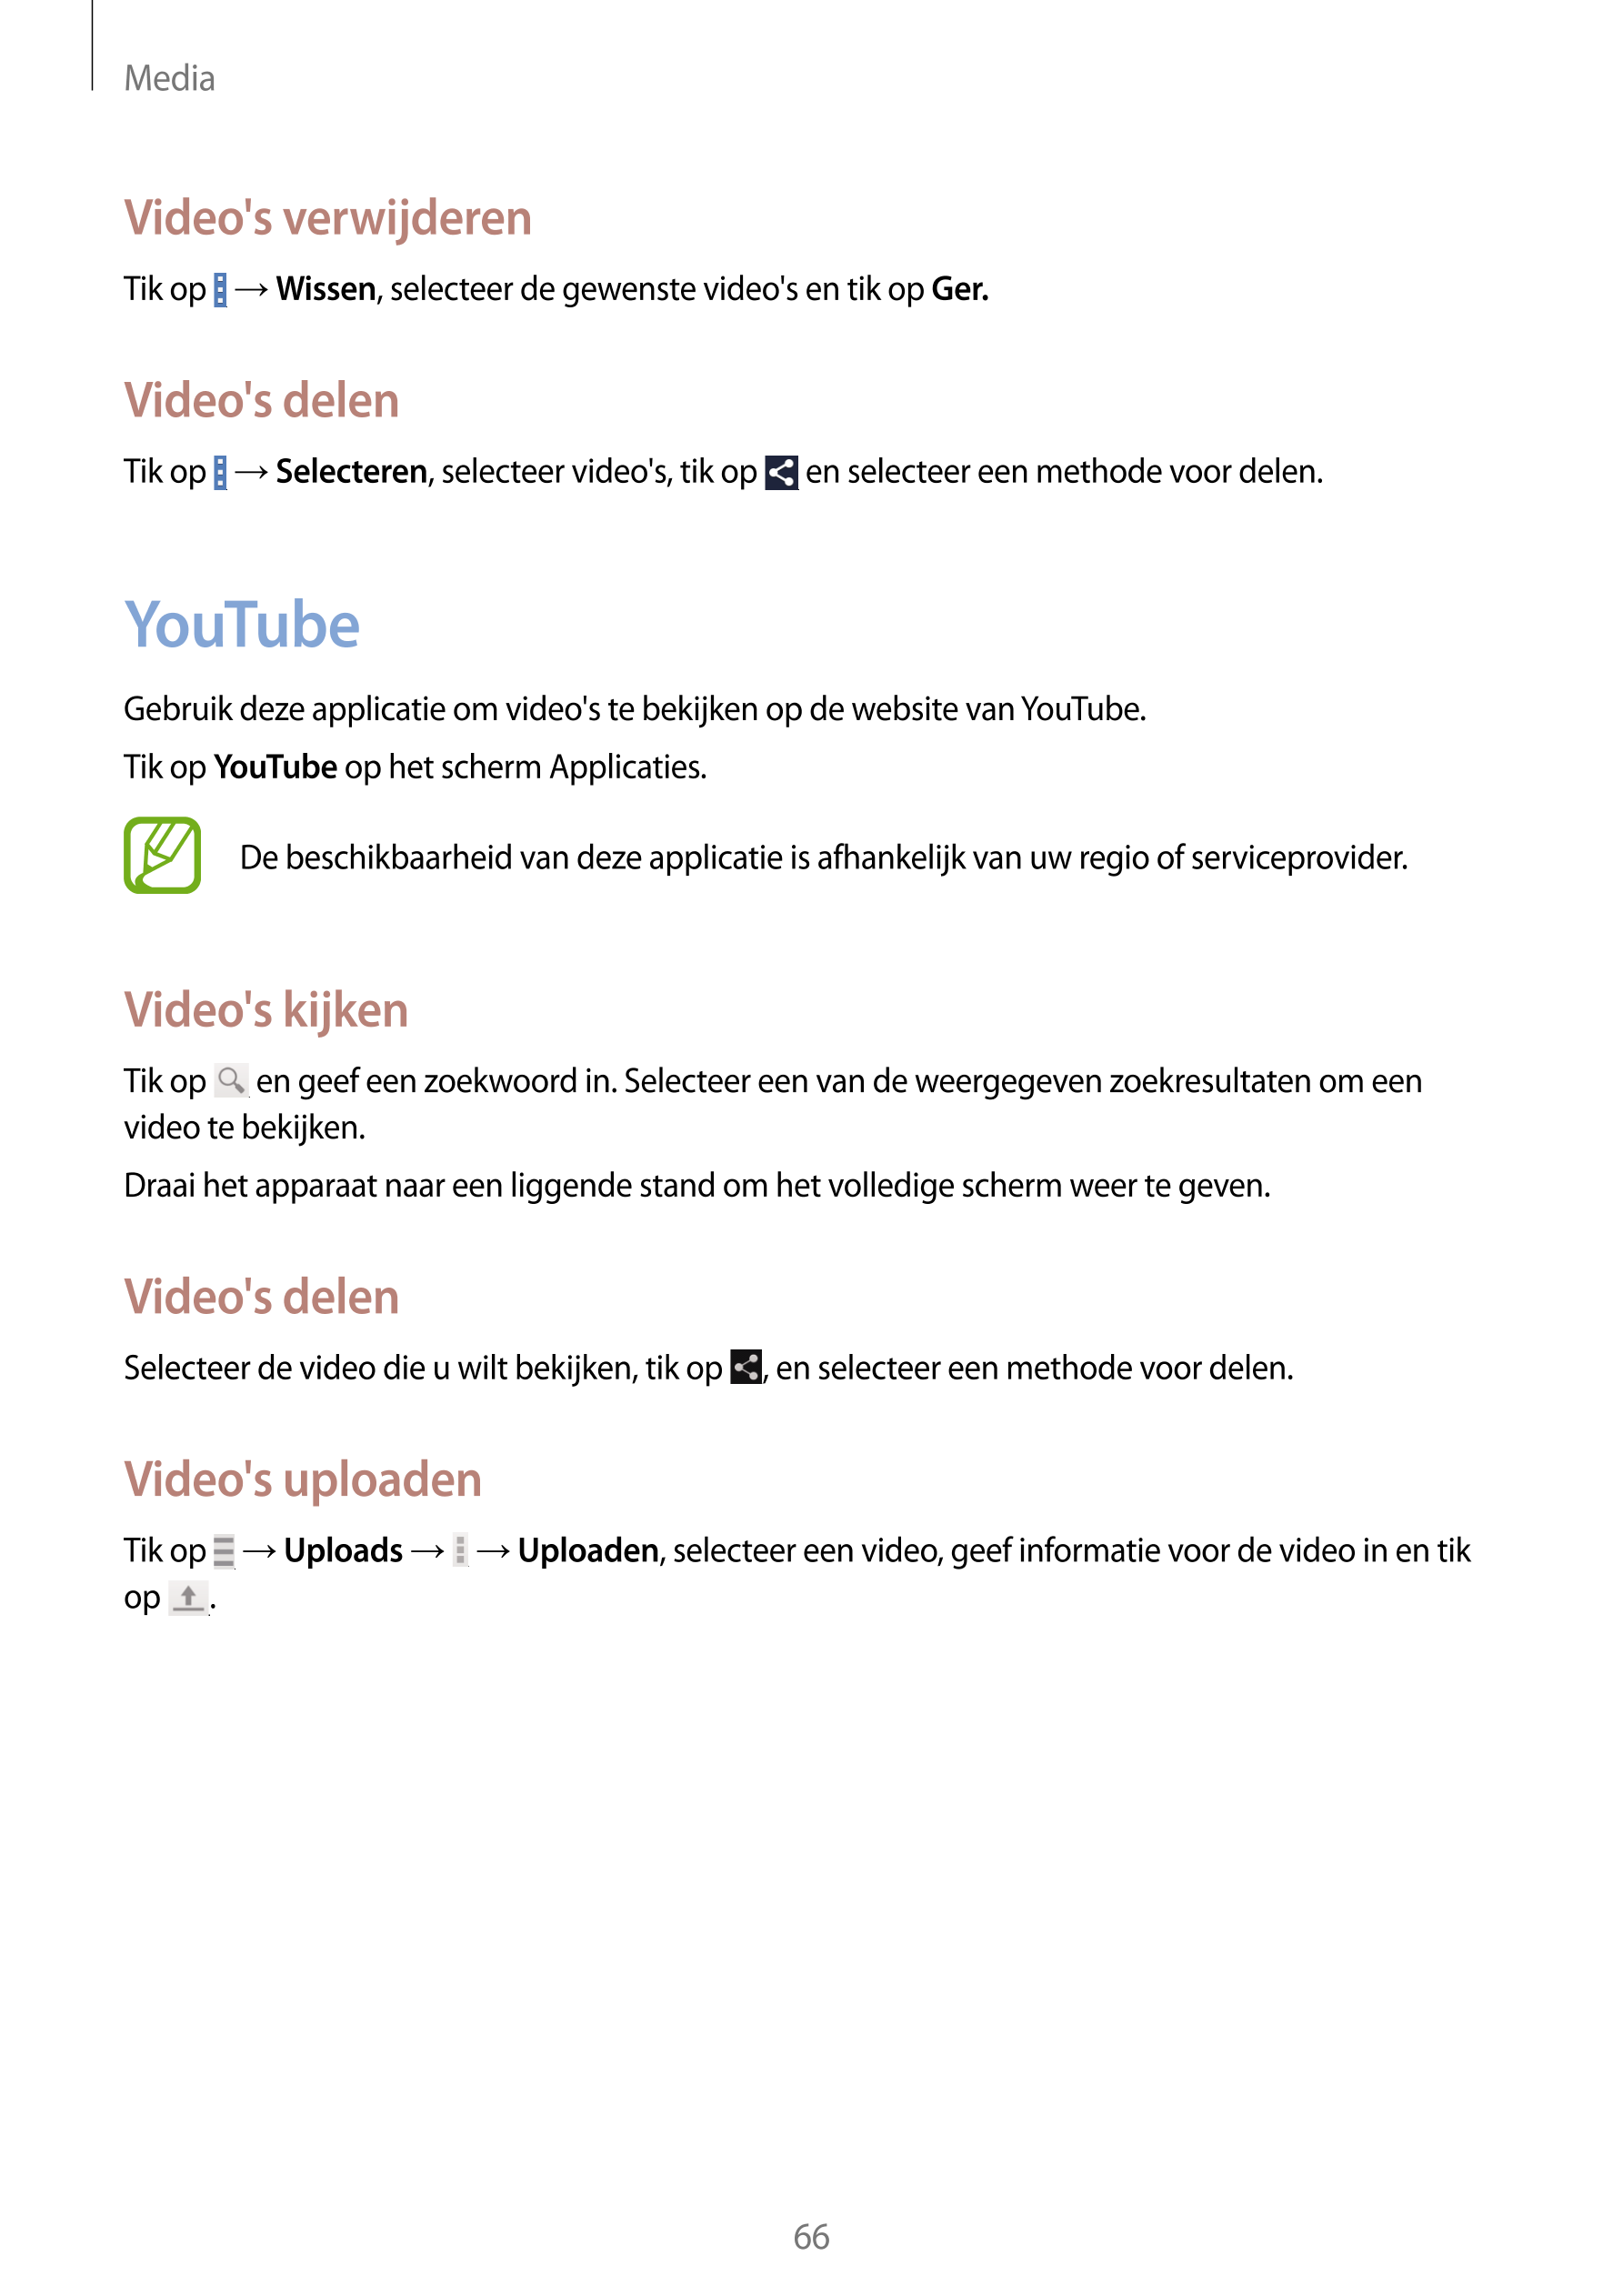 Media
Video's verwijderen
Tik op    →  Wissen, selecteer de gewenste video's en tik op  Ger.
Video's delen
Tik op    →  Selecter